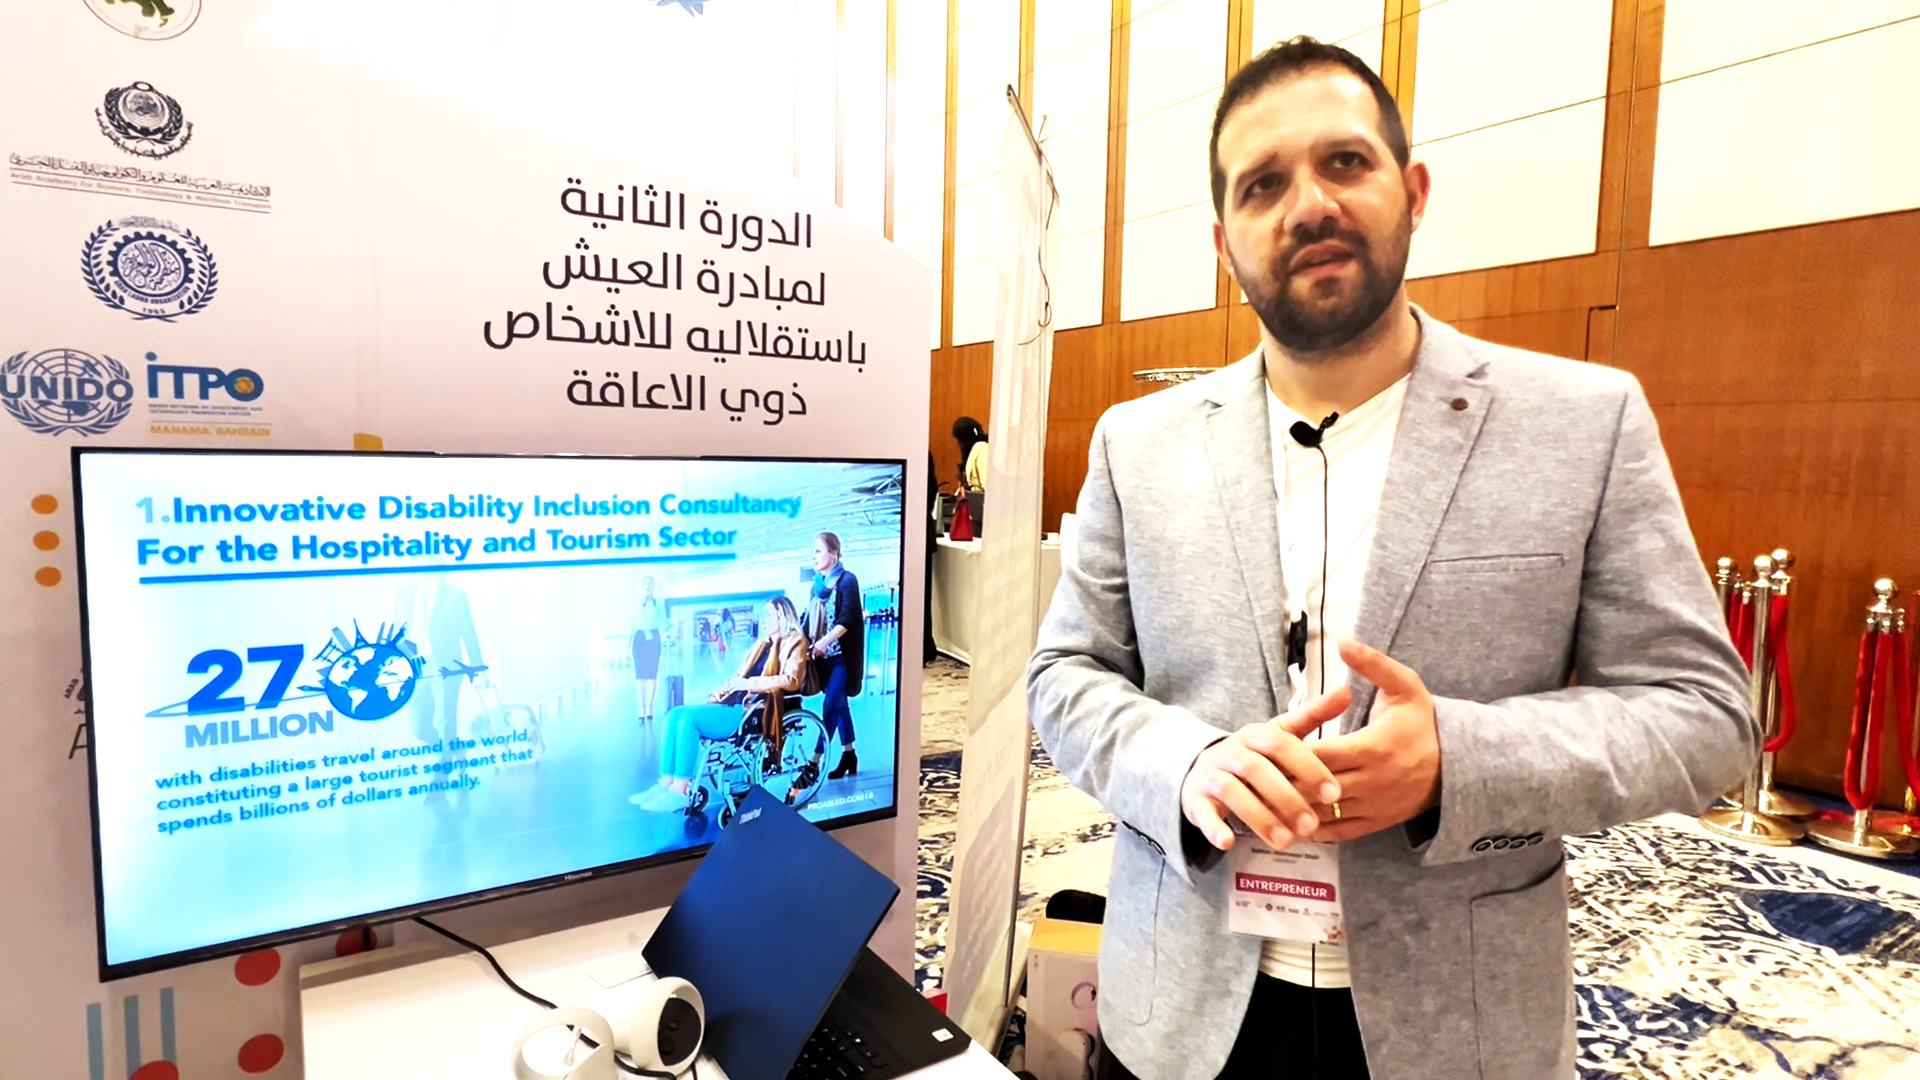 سامر صفير، من لبنان، هو رائد اجتماعي ومؤسس ProAbled وهي شركة متخصصة في تقديم التدريب والاستشارات للشركات والجامعات والقطاع العام وكل ما يختص بدمج الأشخاص من ذوي الإعاقة.